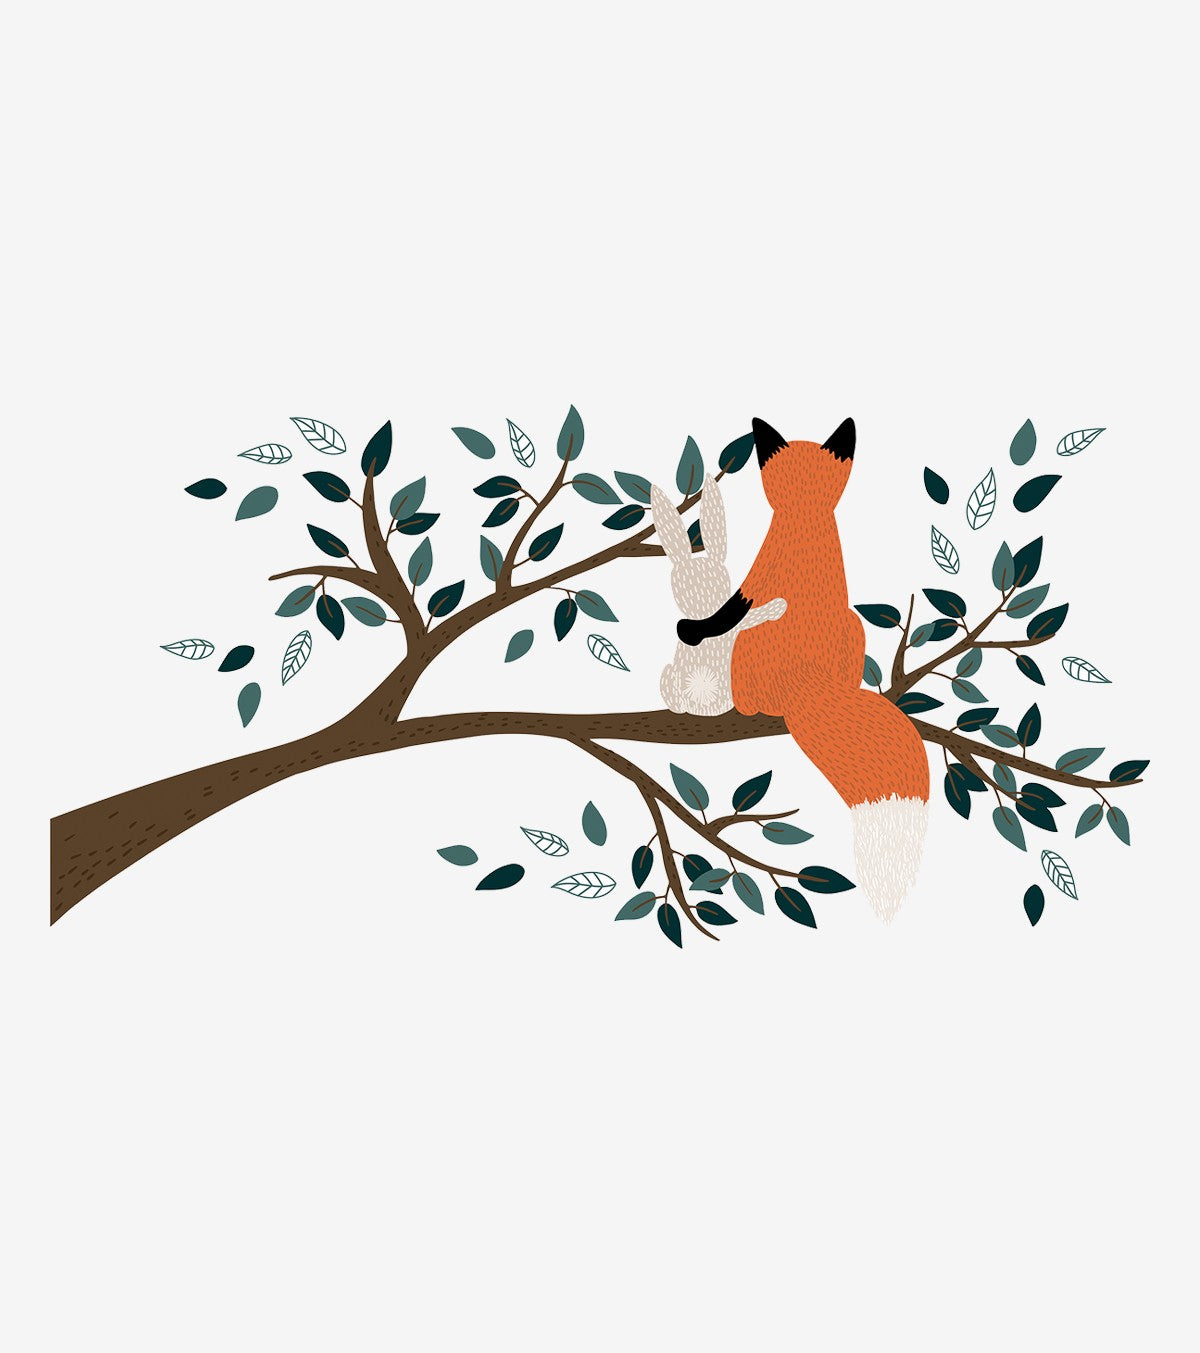 M. FOX - Grand sticker - Renard sur une branche